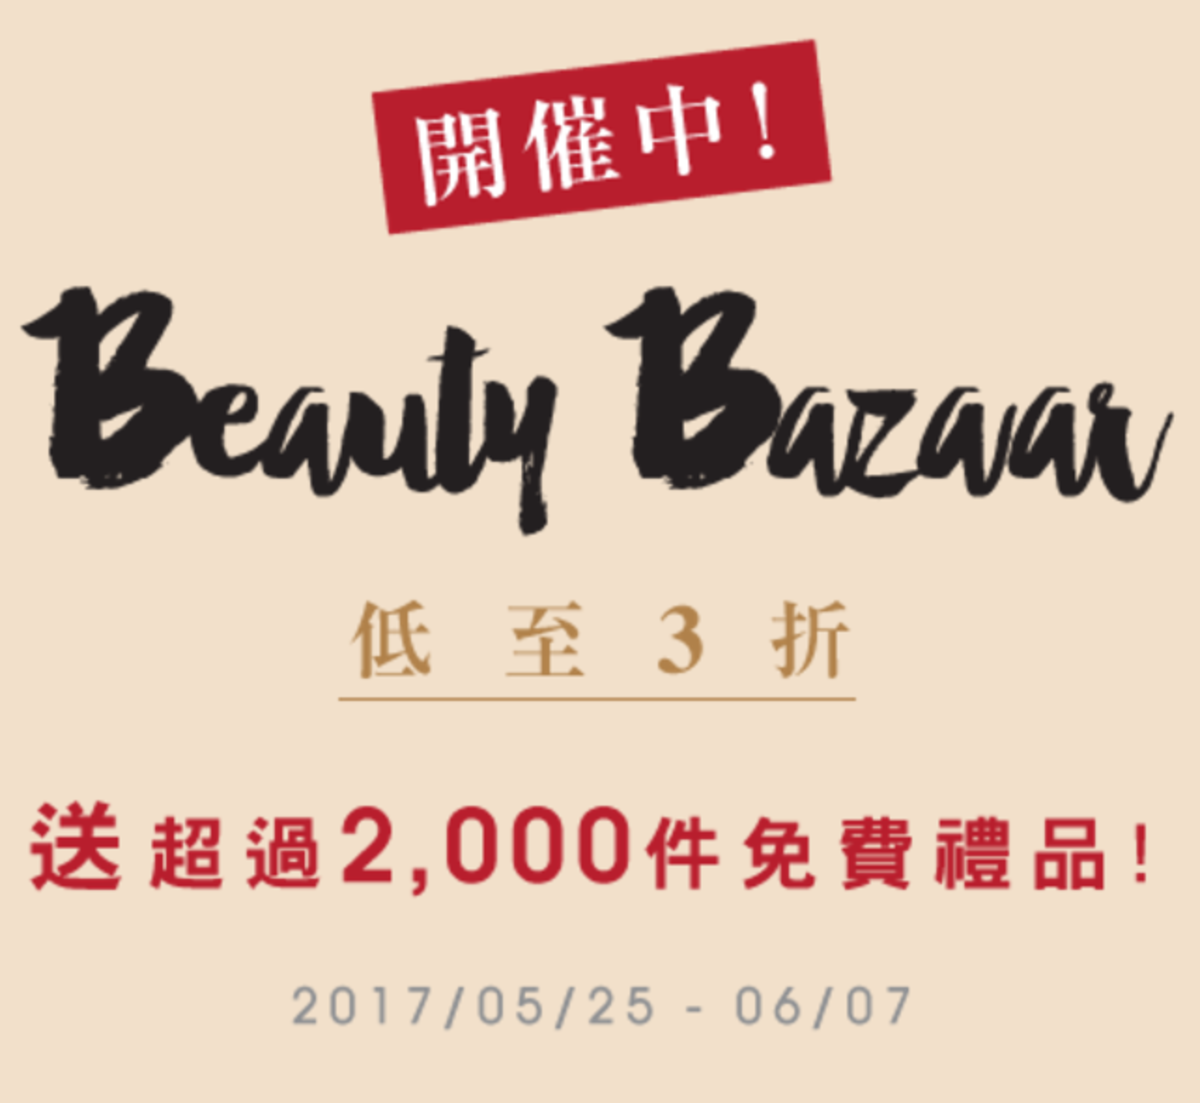 Beauty Bazaar 隨機免費禮品 (買滿指定貨品滿$500)